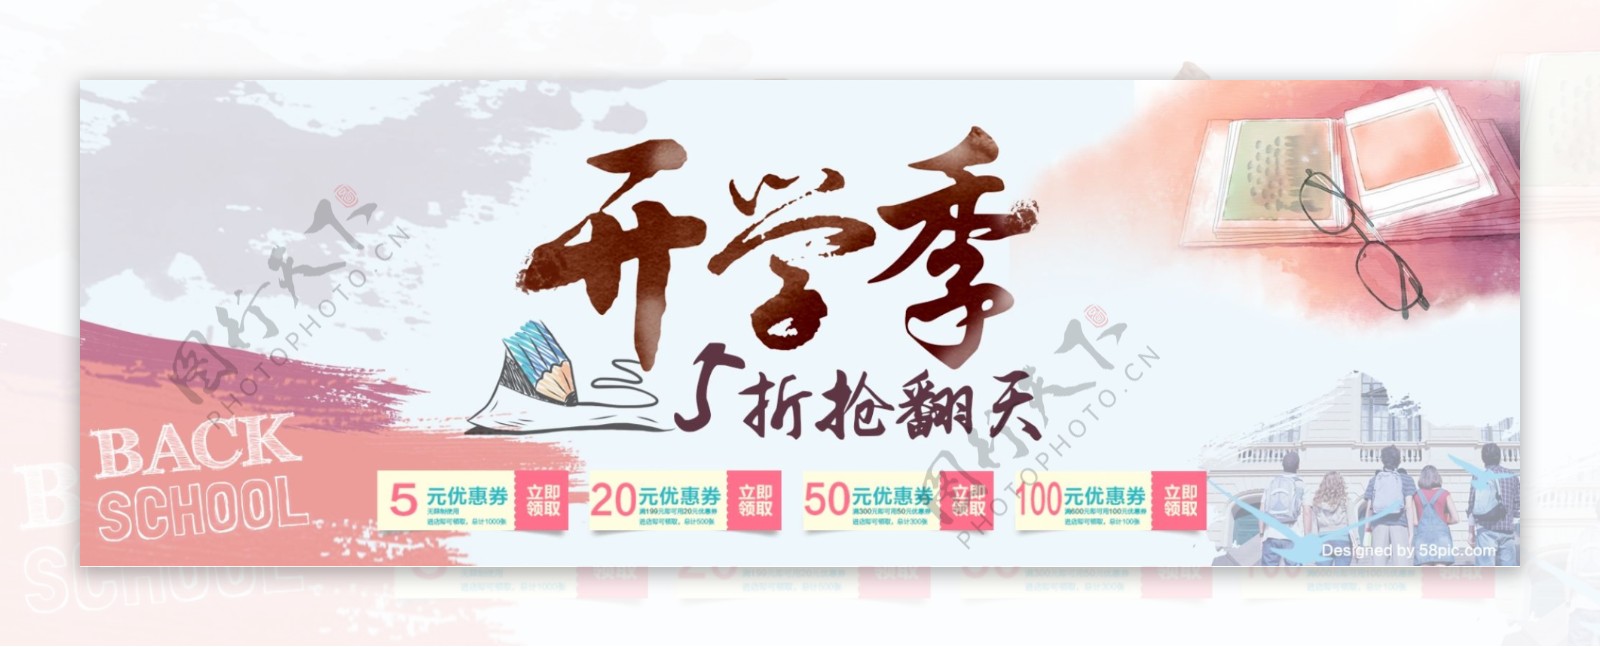 电商淘宝天猫开学季新学期活动促销海报banner模板设计